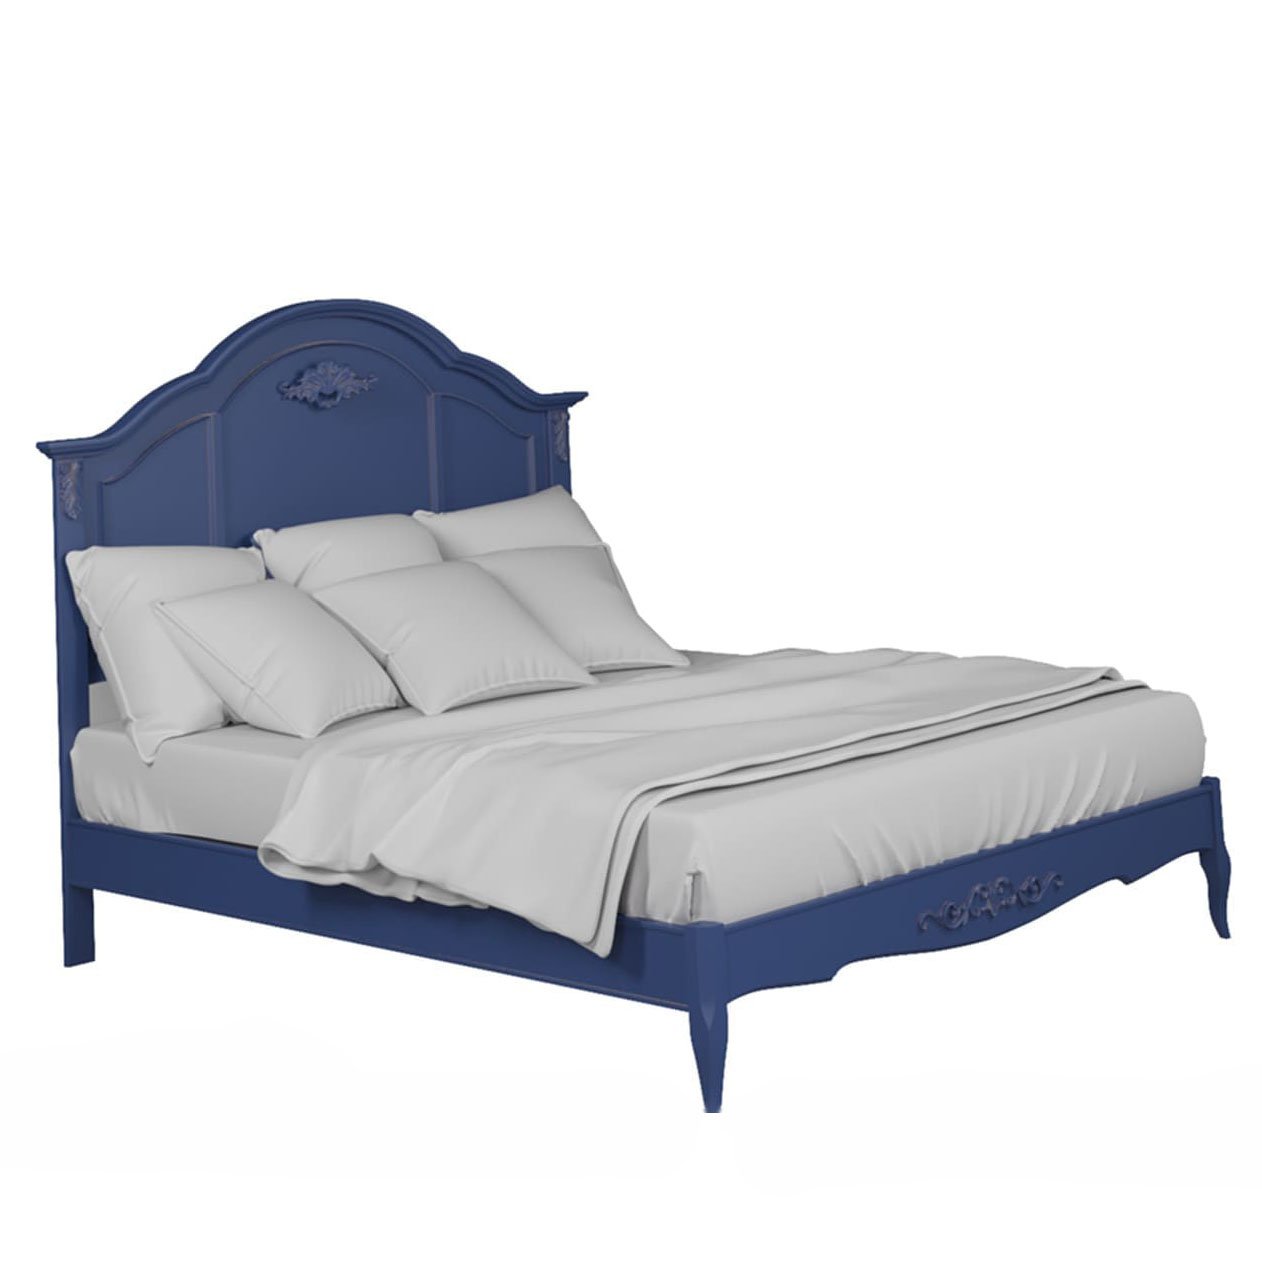 Кровать Aletan Provence, двуспальная, 160x200 см, цвет: синий (B206IN)B206IN